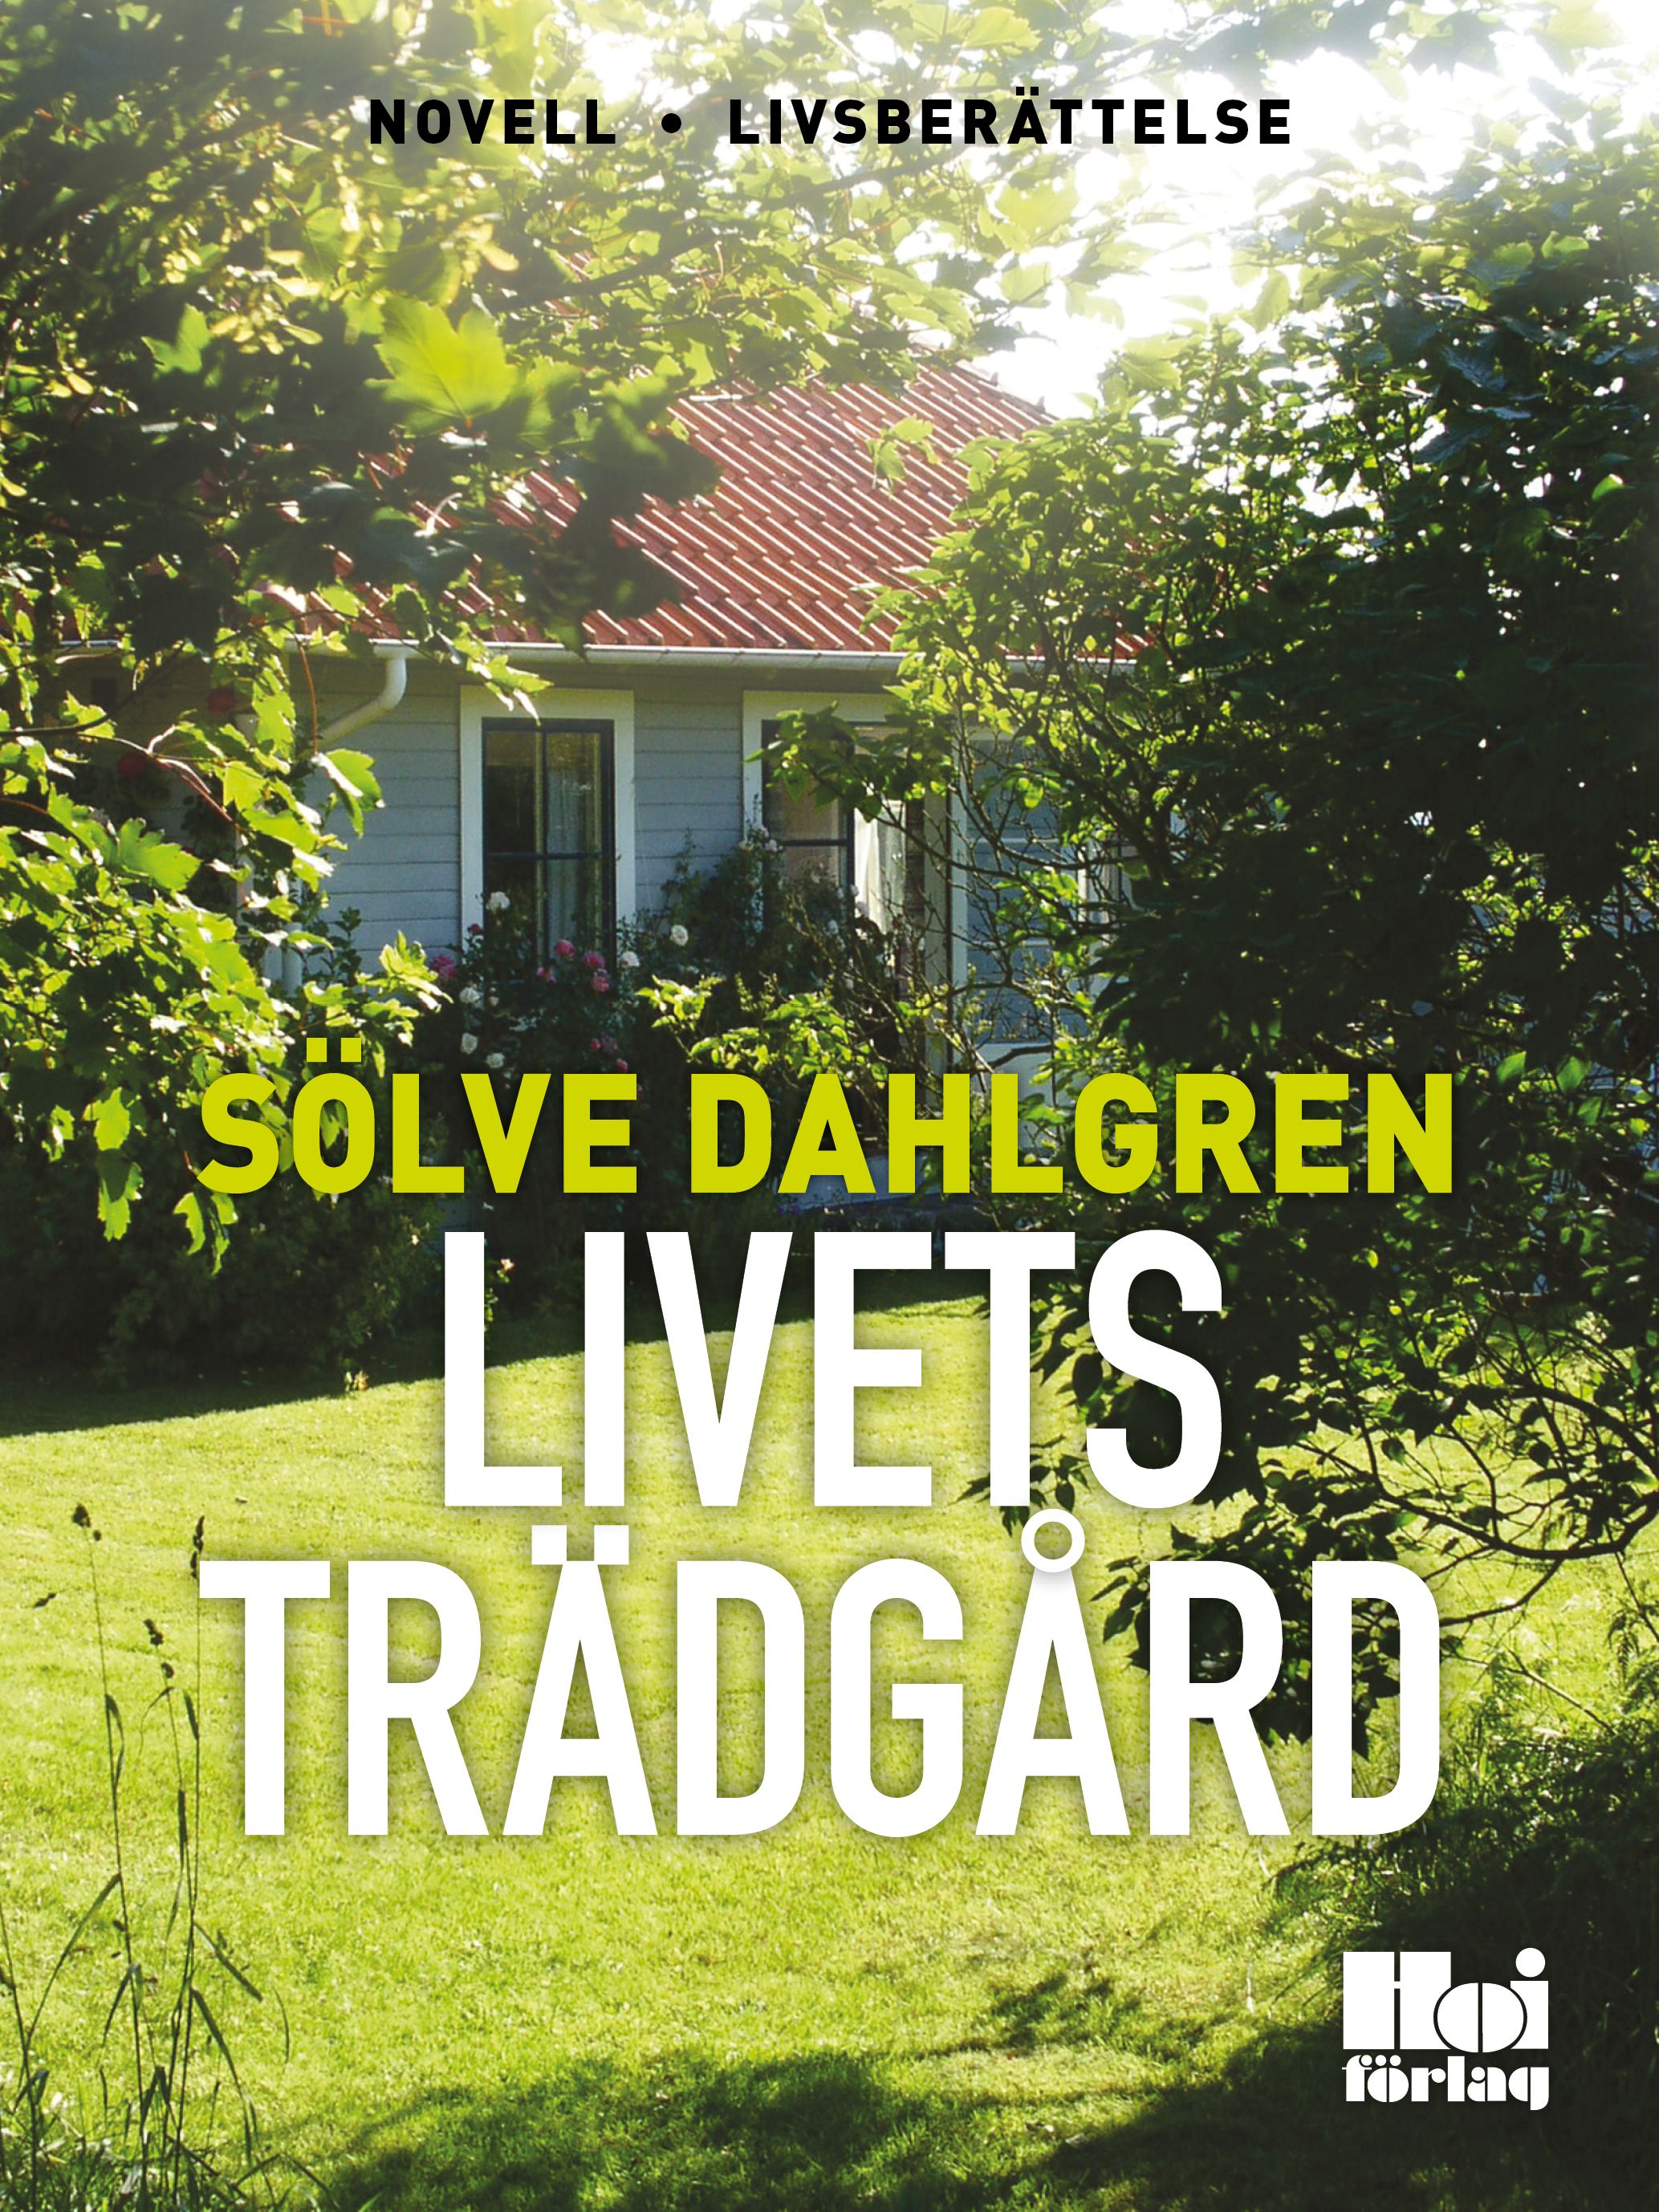 Livets trädgård, eBook by Sölve Dahlgren